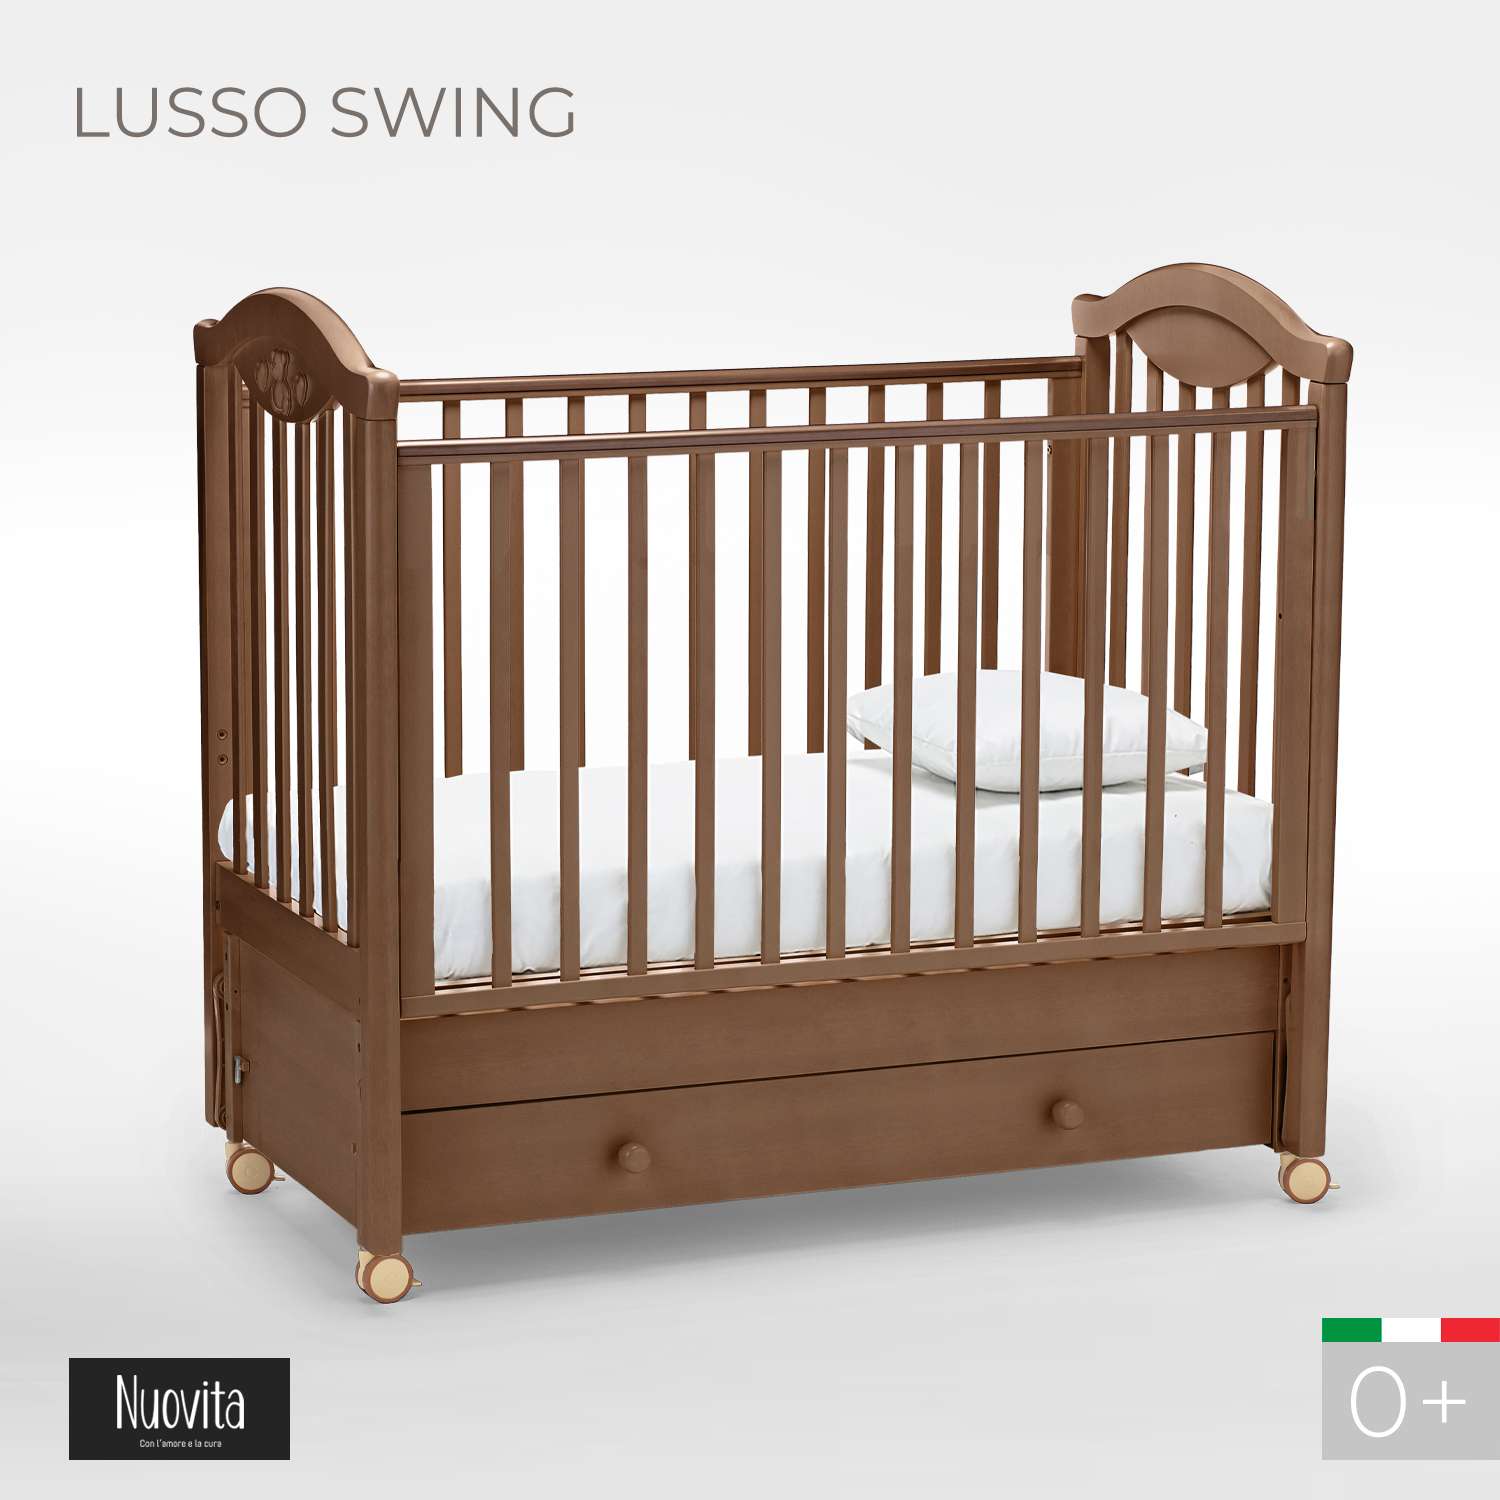 Детская кроватка Nuovita Lusso Swing прямоугольная, продольный маятник (темный орех) - фото 2